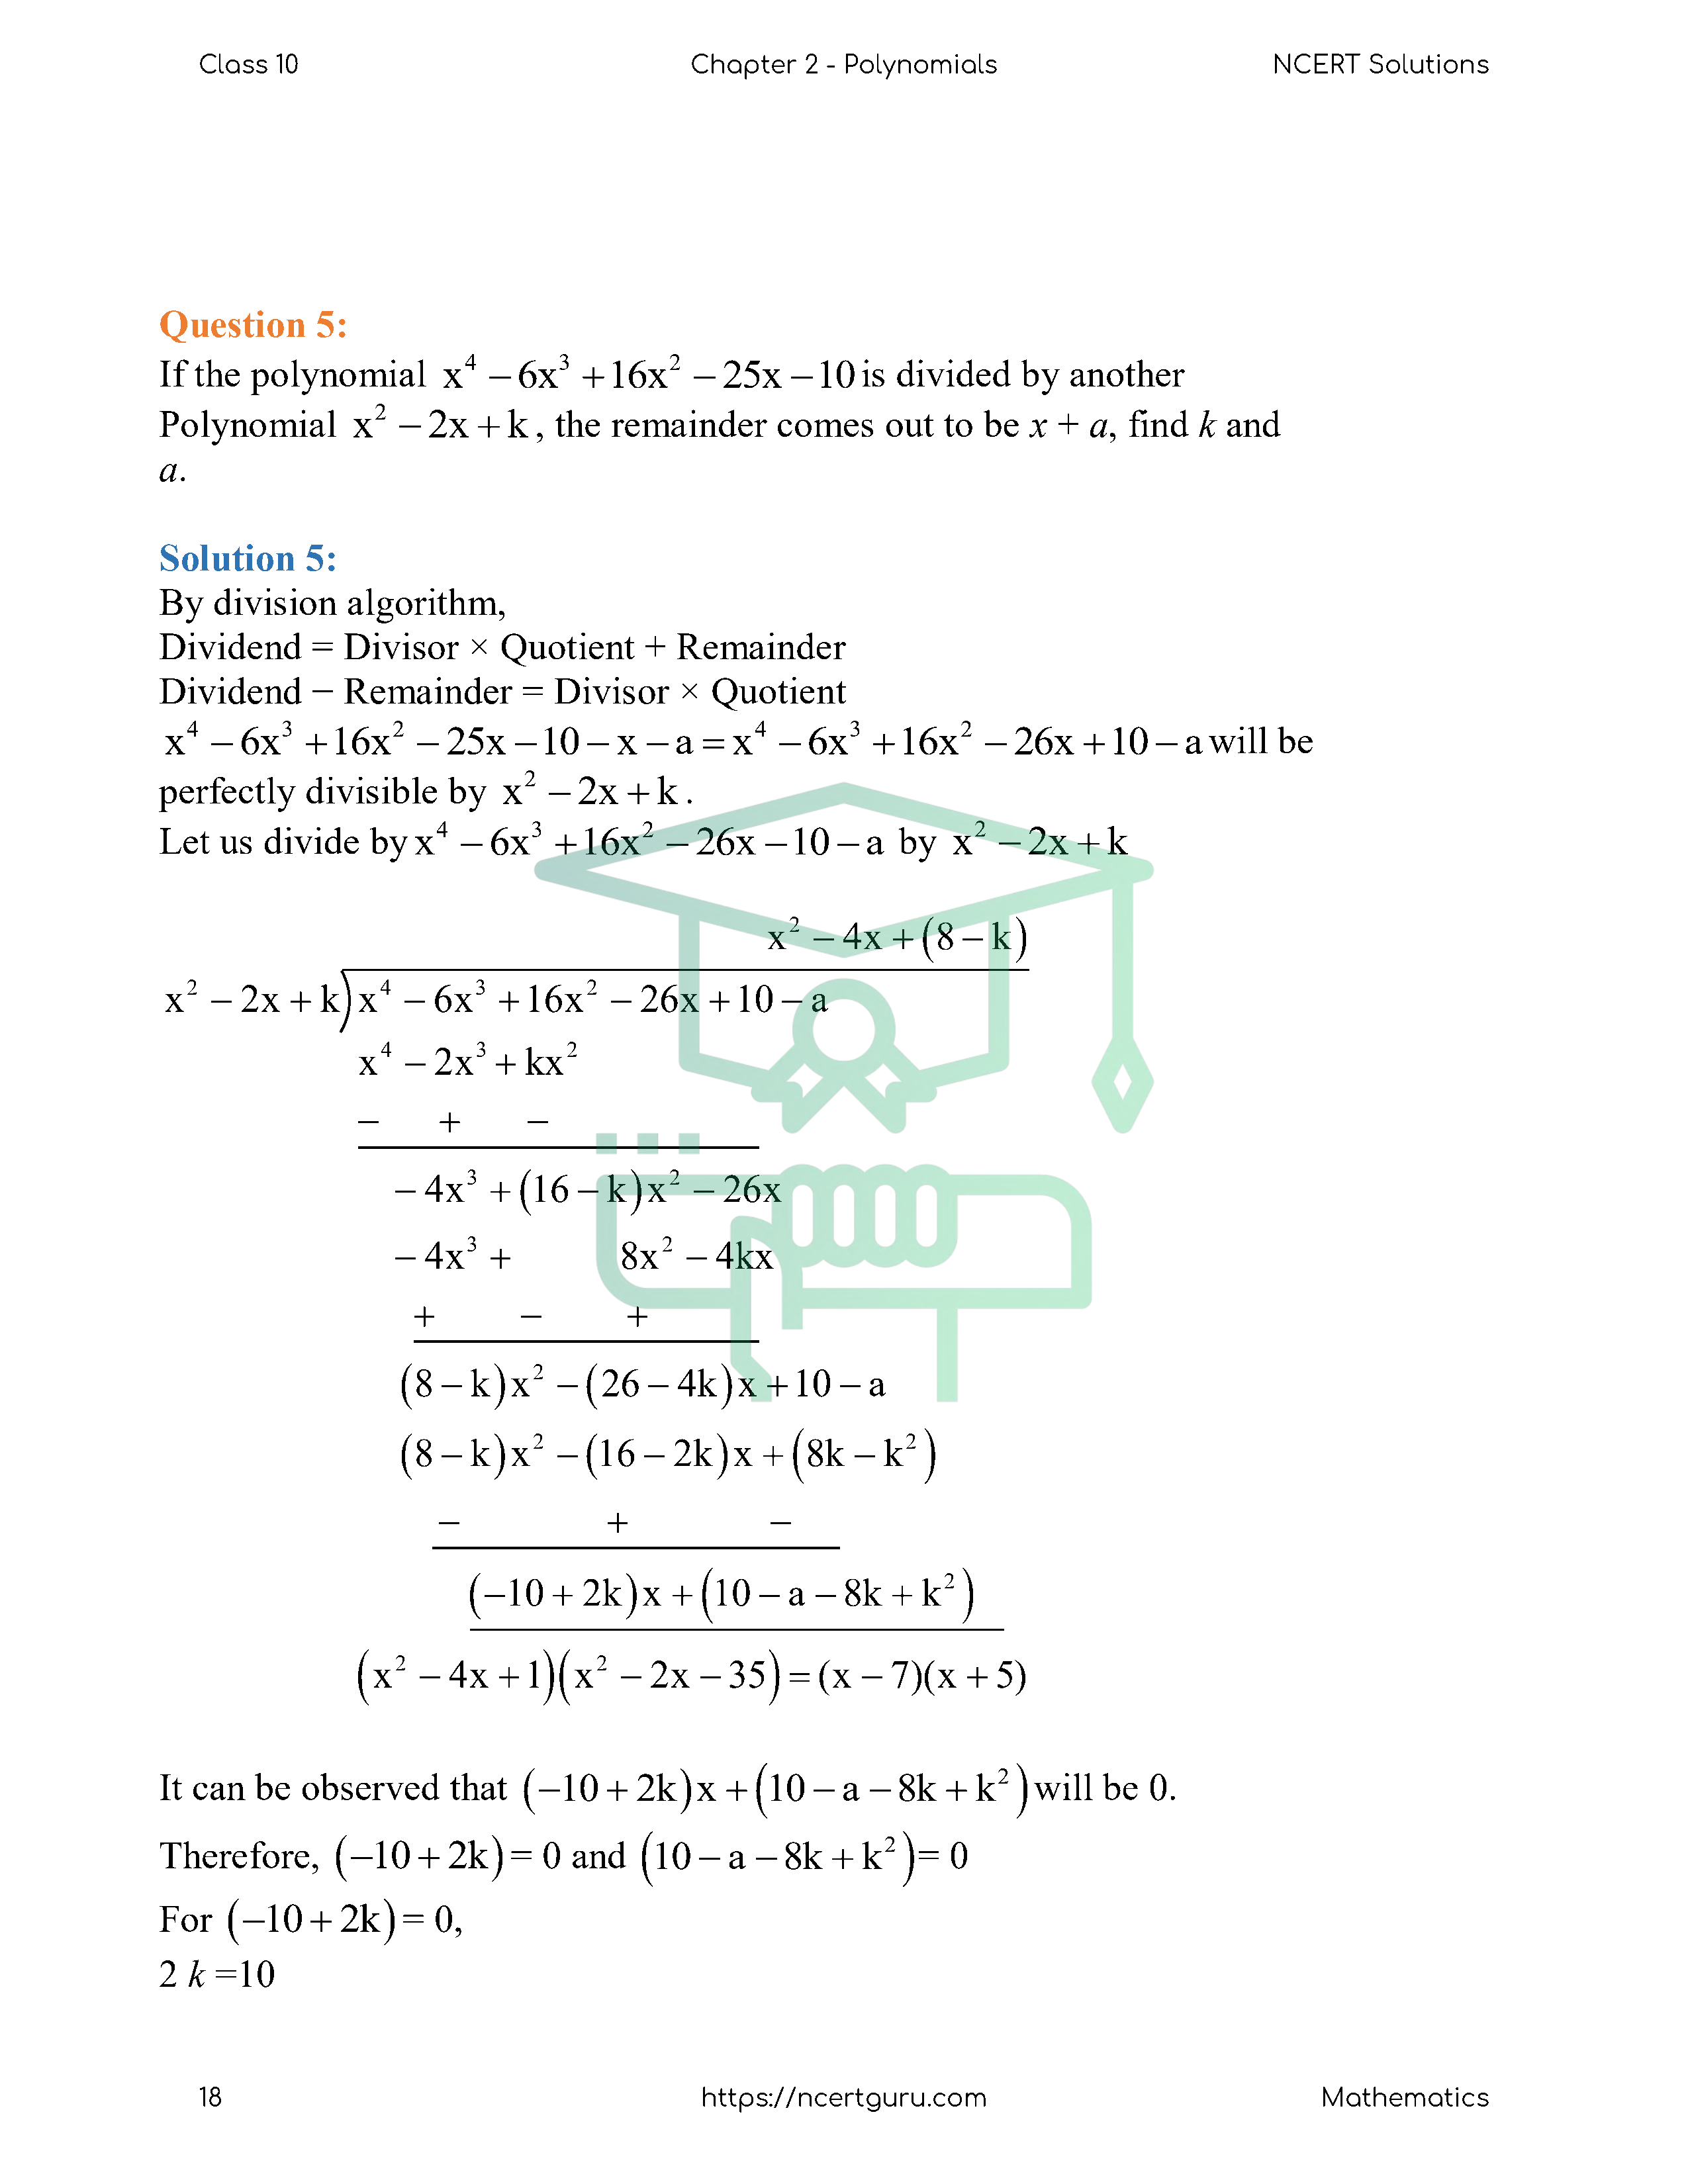 NCERT Solutions for Class 10 Maths Chapter 2